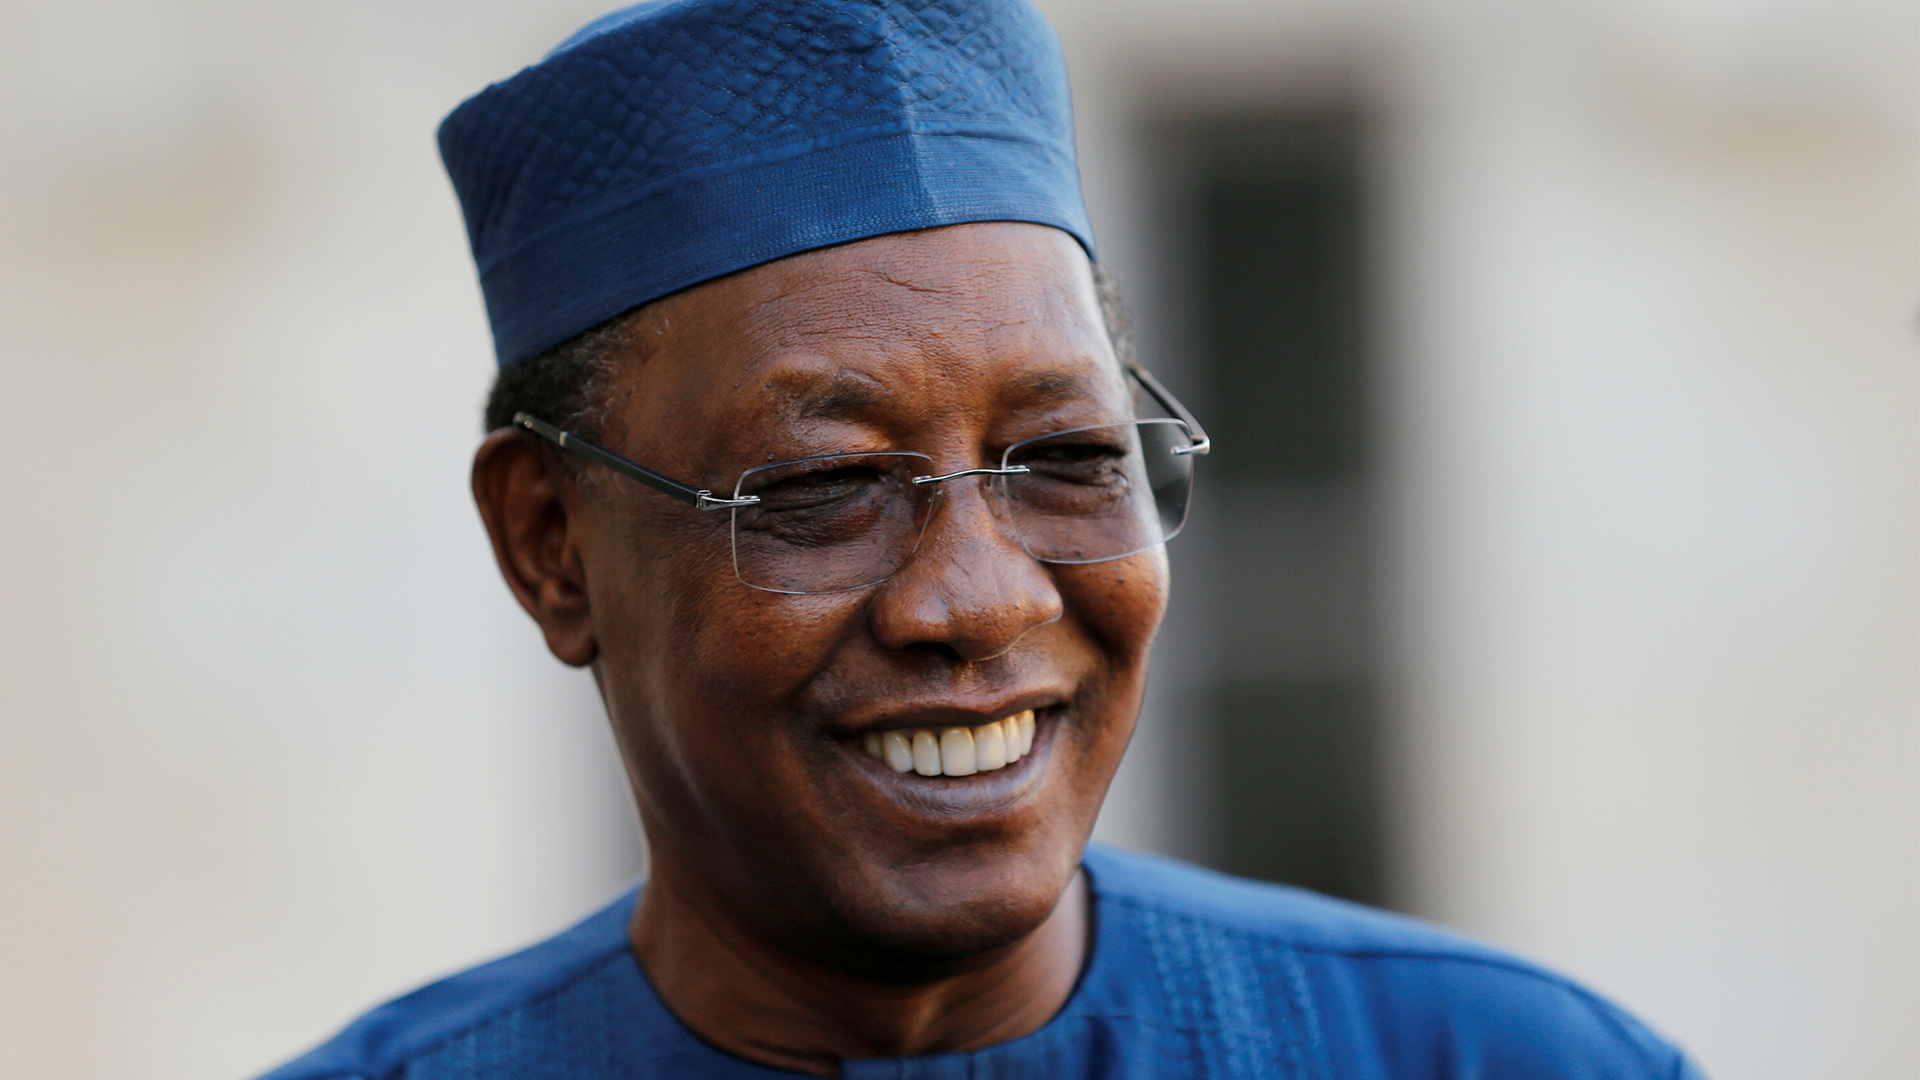 Mots de condoléances du Président Bulut BAĞCI suite au décès du Président tchadien Idriss Déby.